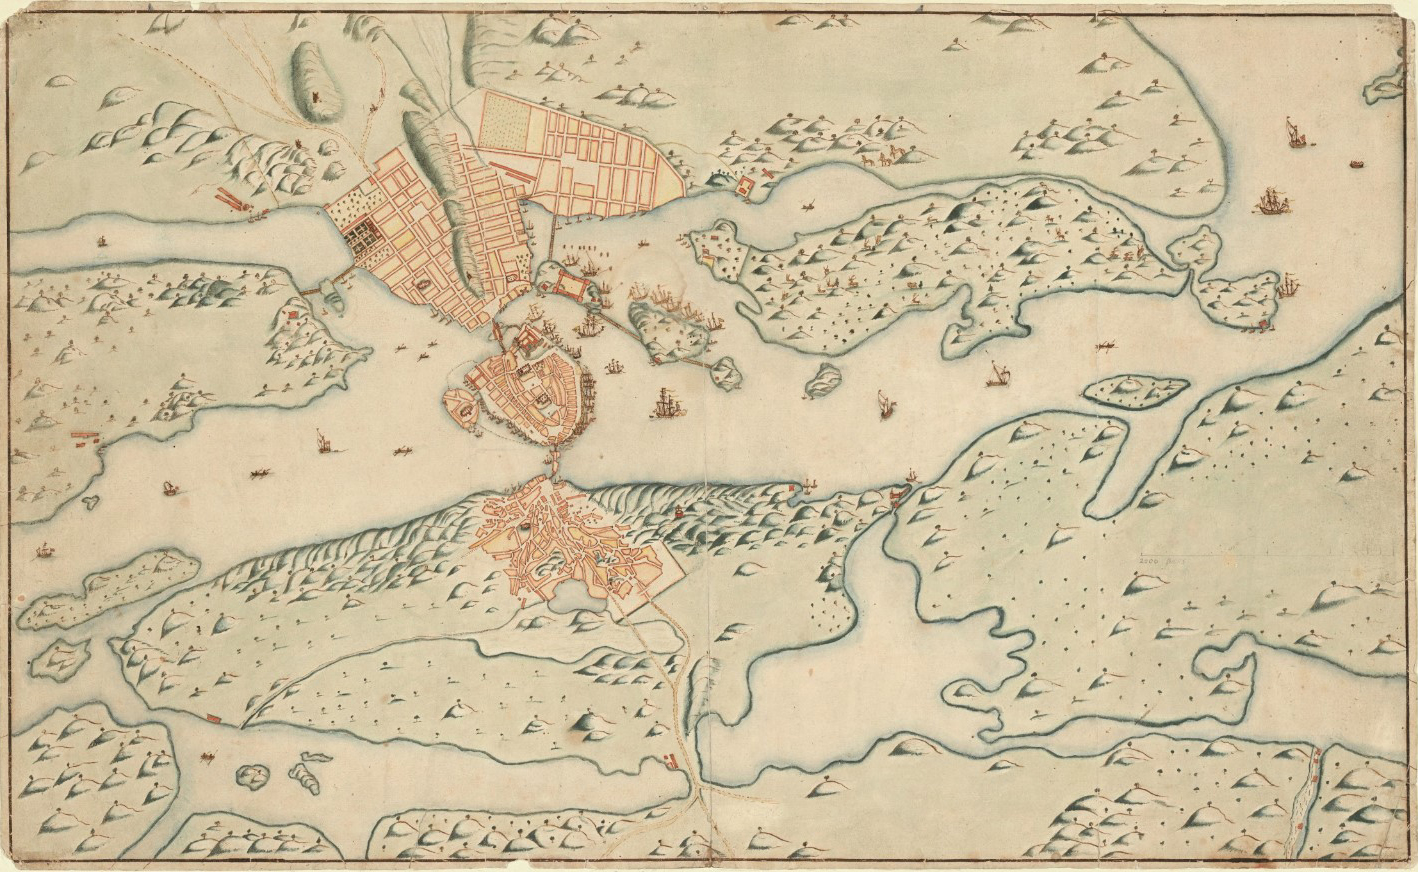 Kort over Stockholm fra 1600-tallet